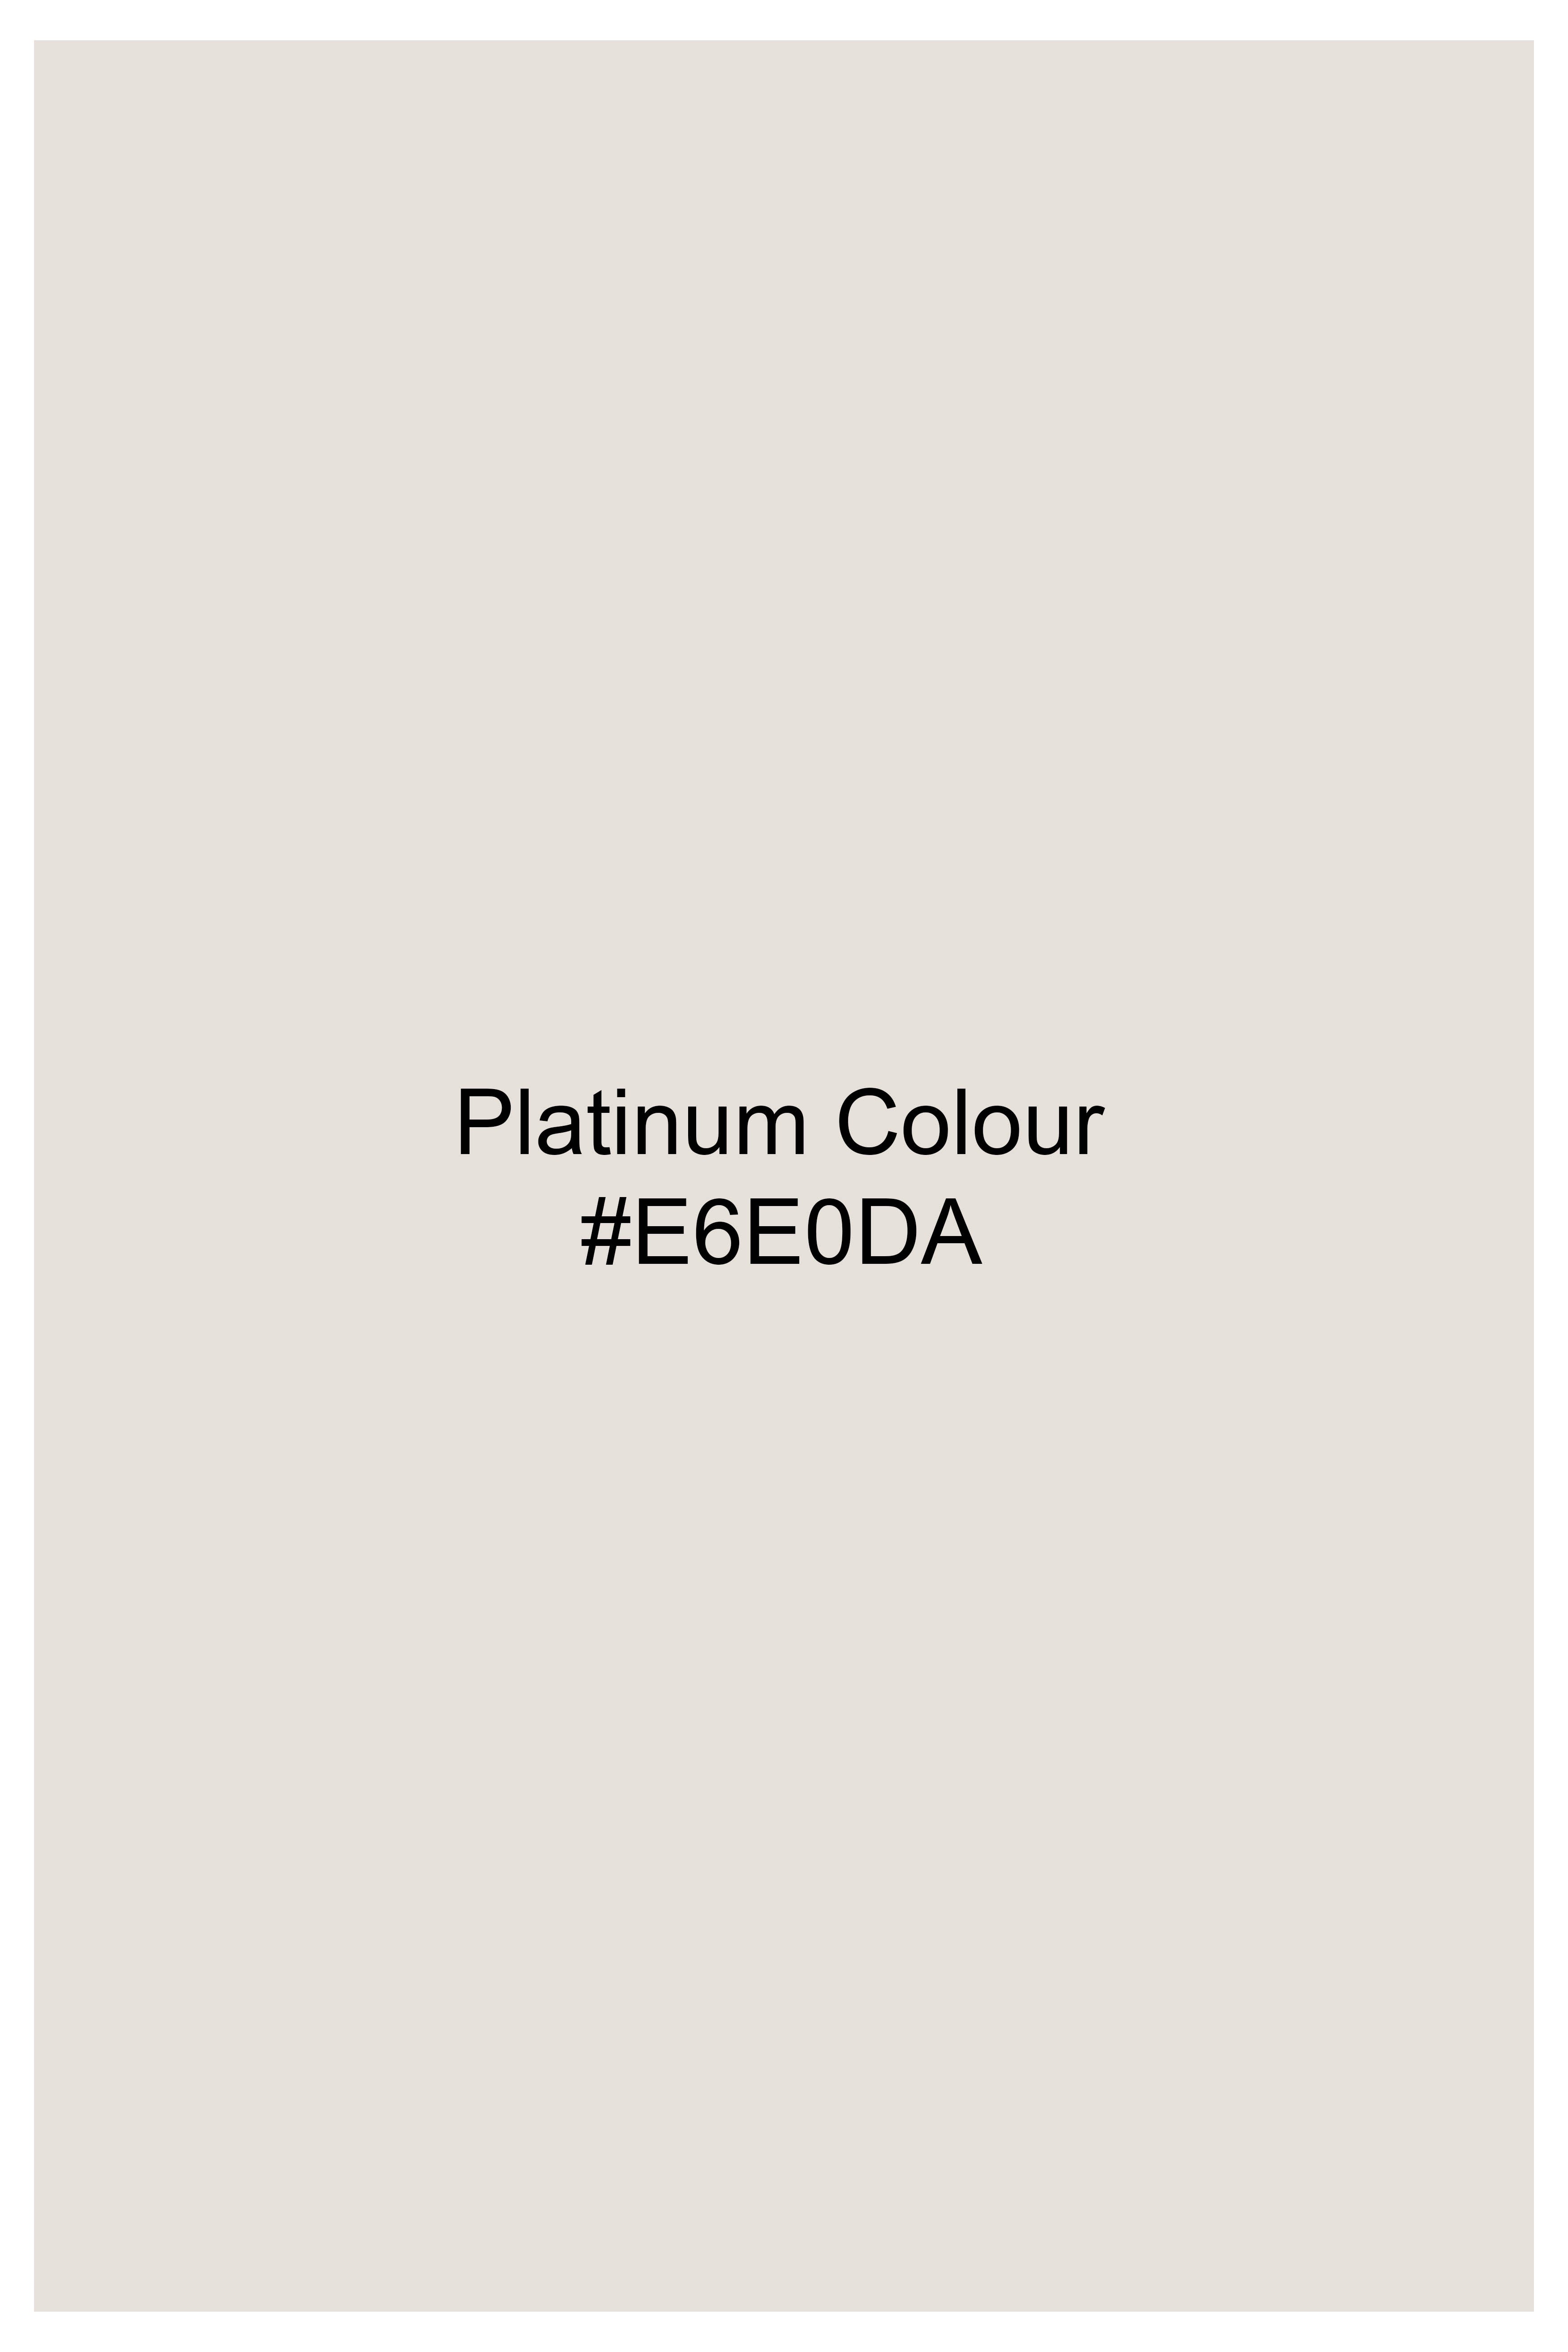 Platinum Cream Patchwork Premium Cotton Designer Shirt 7566-P310-E207-38, 7566-P310-E207-H-38, 7566-P310-E207-39, 7566-P310-E207-H-39, 7566-P310-E207-40, 7566-P310-E207-H-40, 7566-P310-E207-42, 7566-P310-E207-H-42, 7566-P310-E207-44, 7566-P310-E207-H-44, 7566-P310-E207-46, 7566-P310-E207-H-46, 7566-P310-E207-48, 7566-P310-E207-H-48, 7566-P310-E207-50, 7566-P310-E207-H-50, 7566-P310-E207-52, 7566-P310-E207-H-52